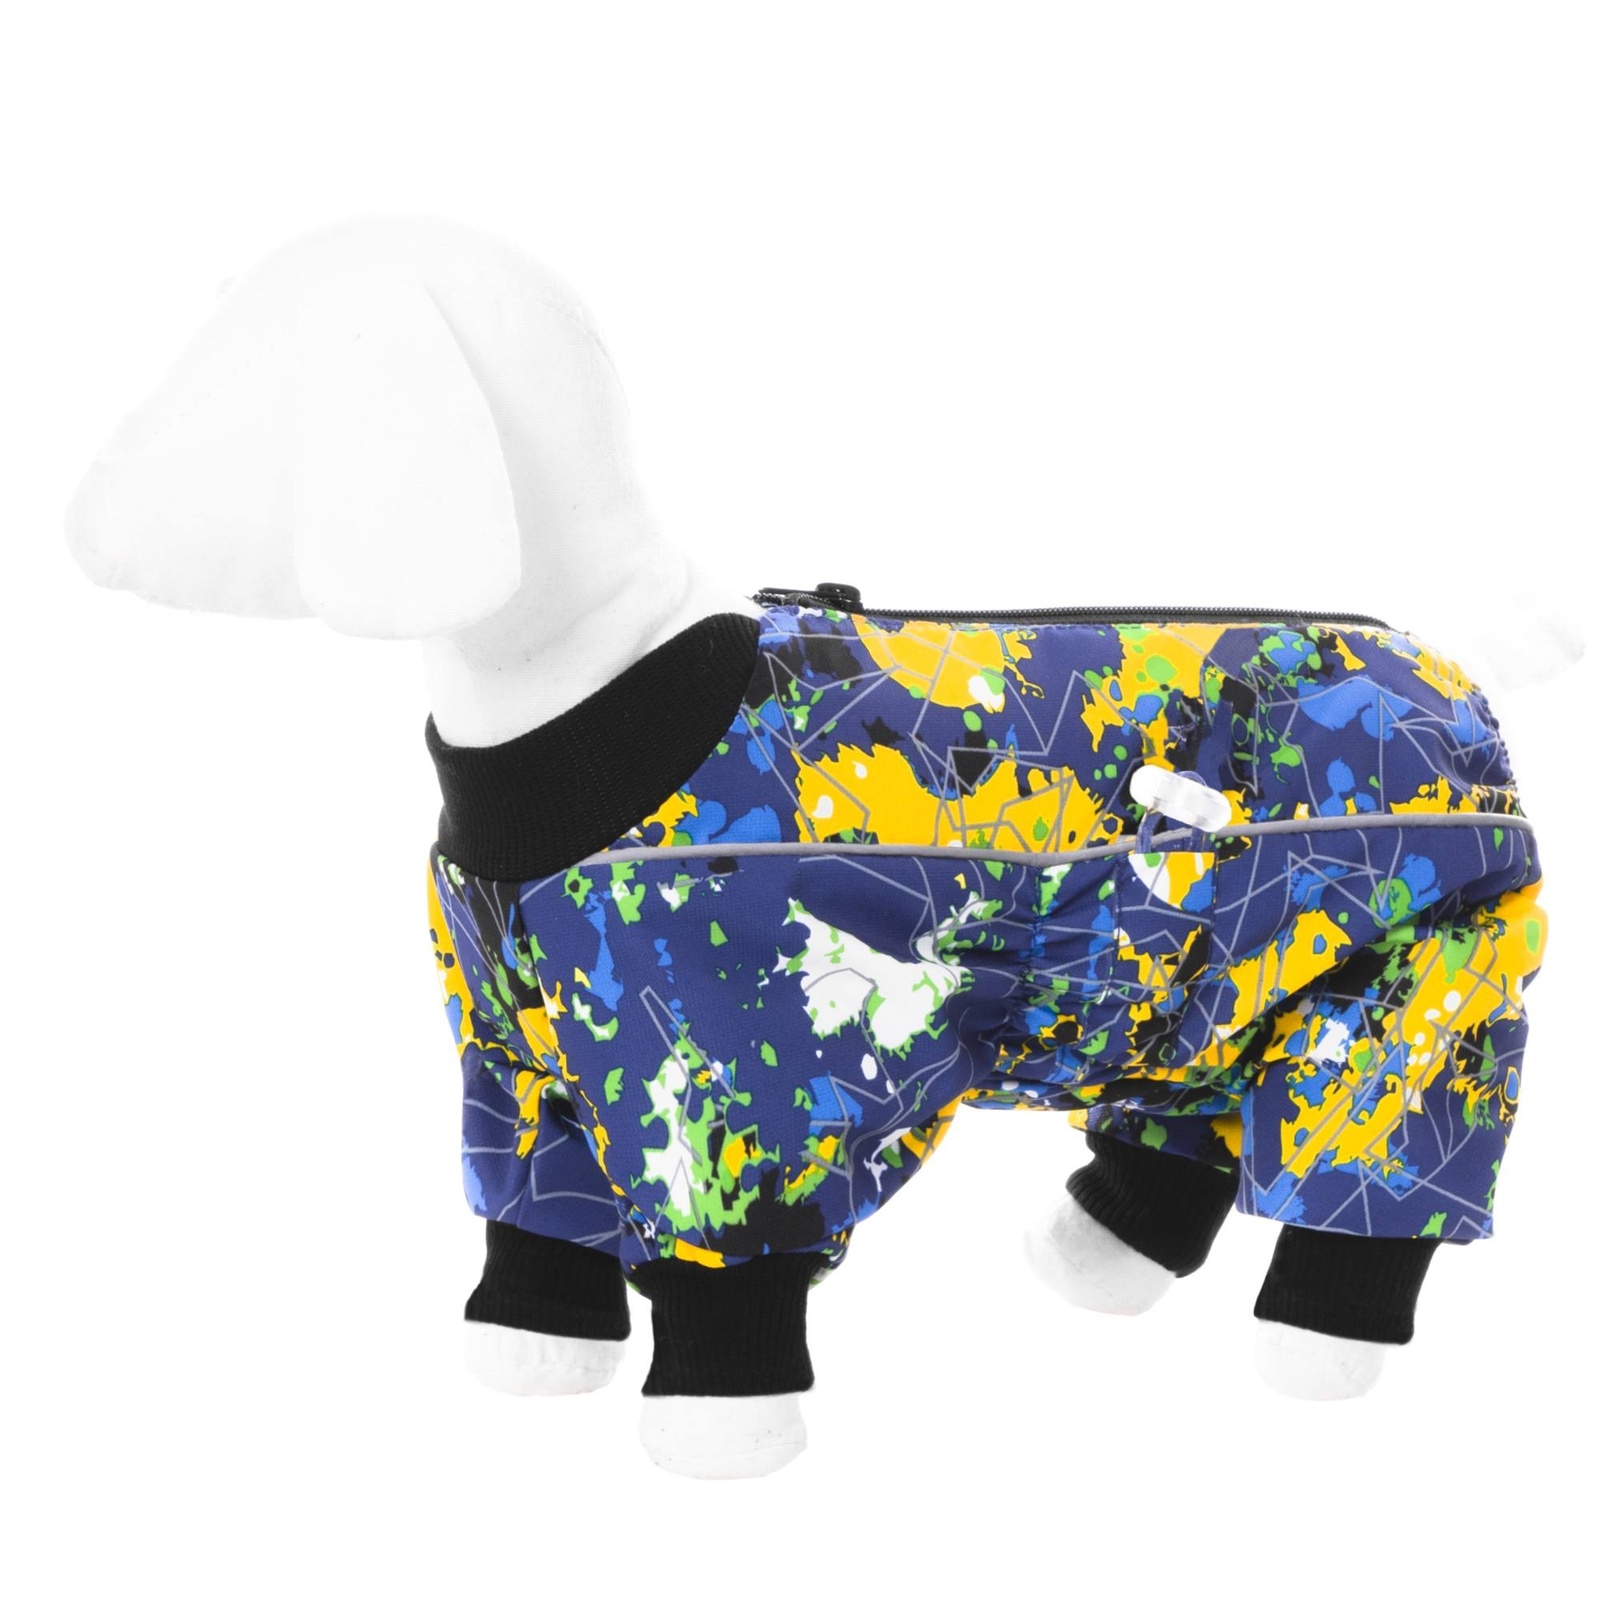 Yami-Yami одежда Yami-Yami одежда комбинезон для собак малых пород, на флисе с рисунком краски (XL) yami yami одежда yami yami одежда комбинезон для собак малых пород фиолетовый на флисе м 2